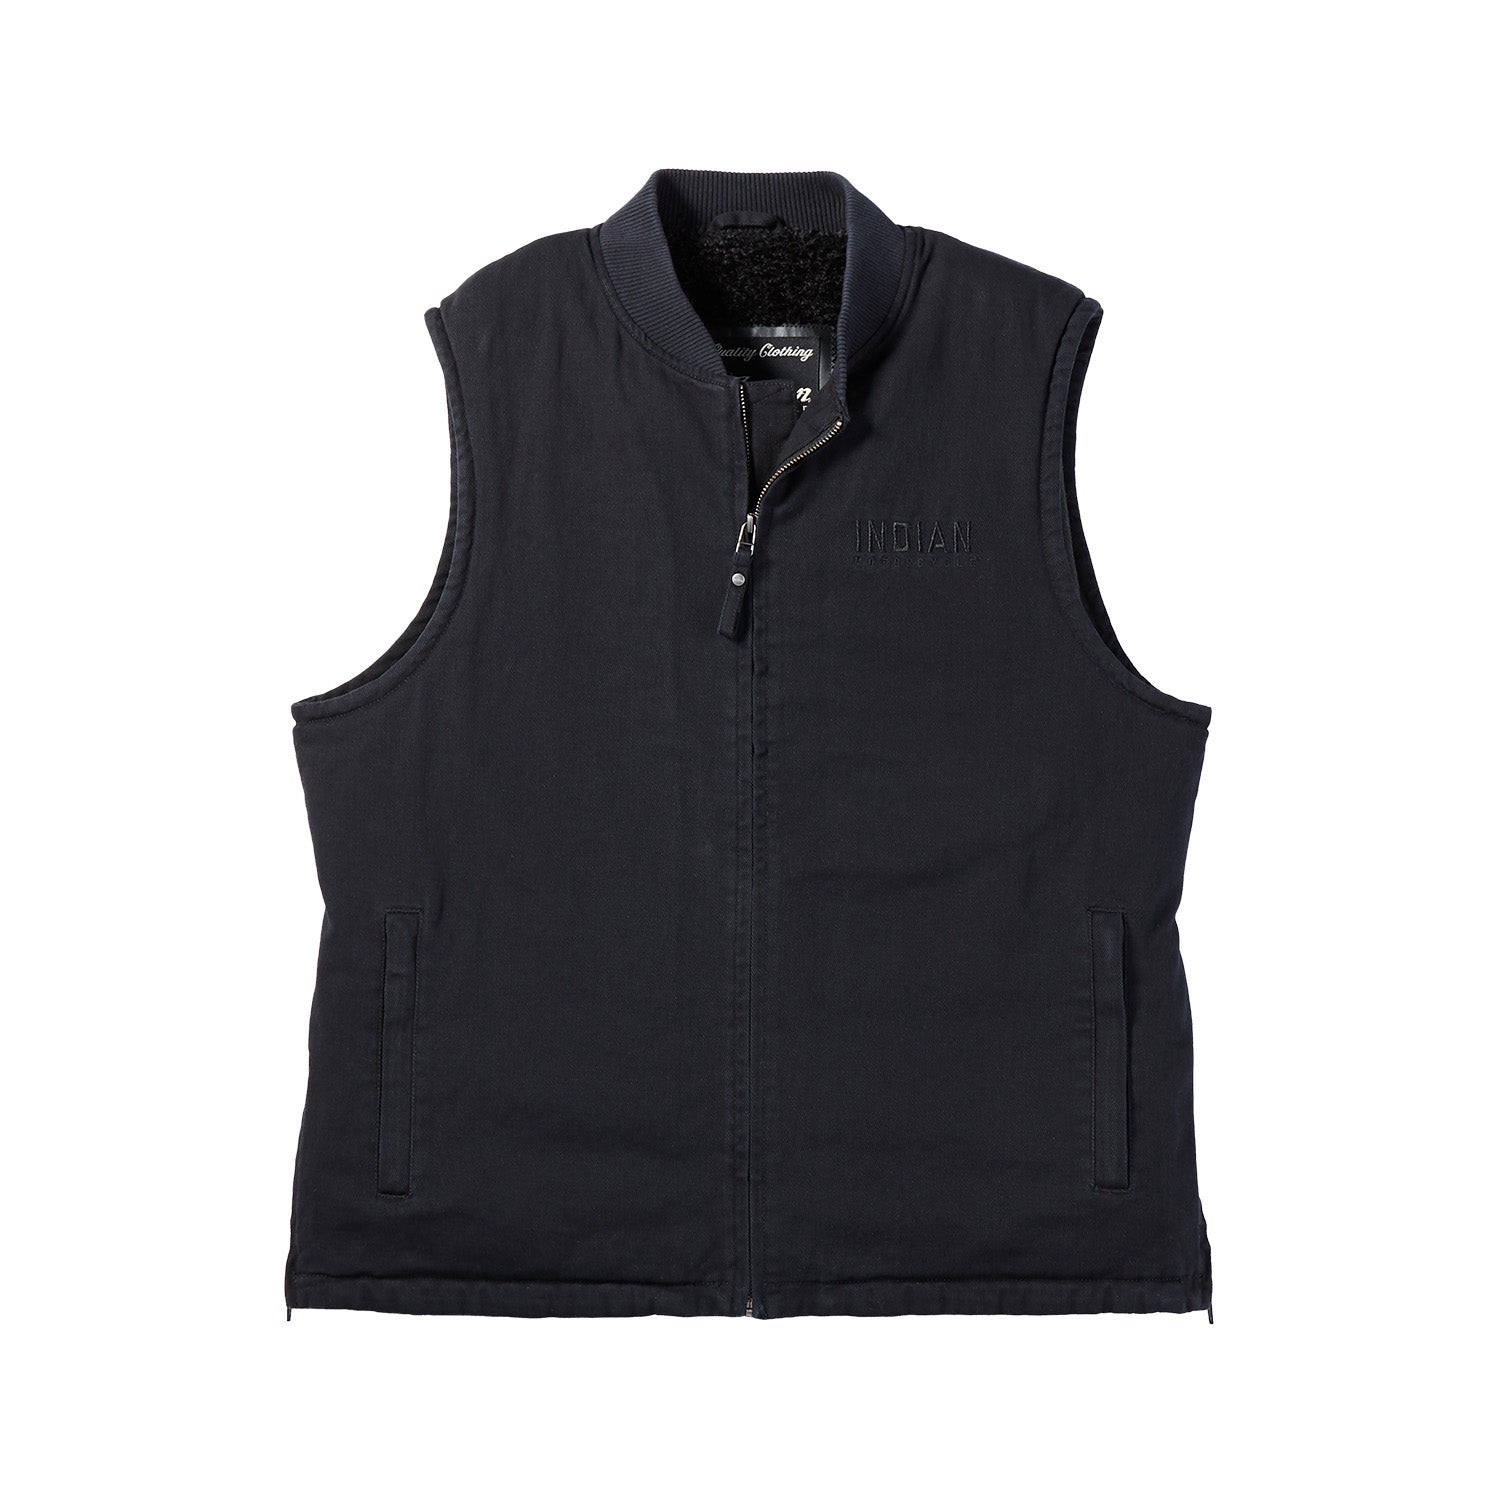 Men's Textile Hudson Vest, Black